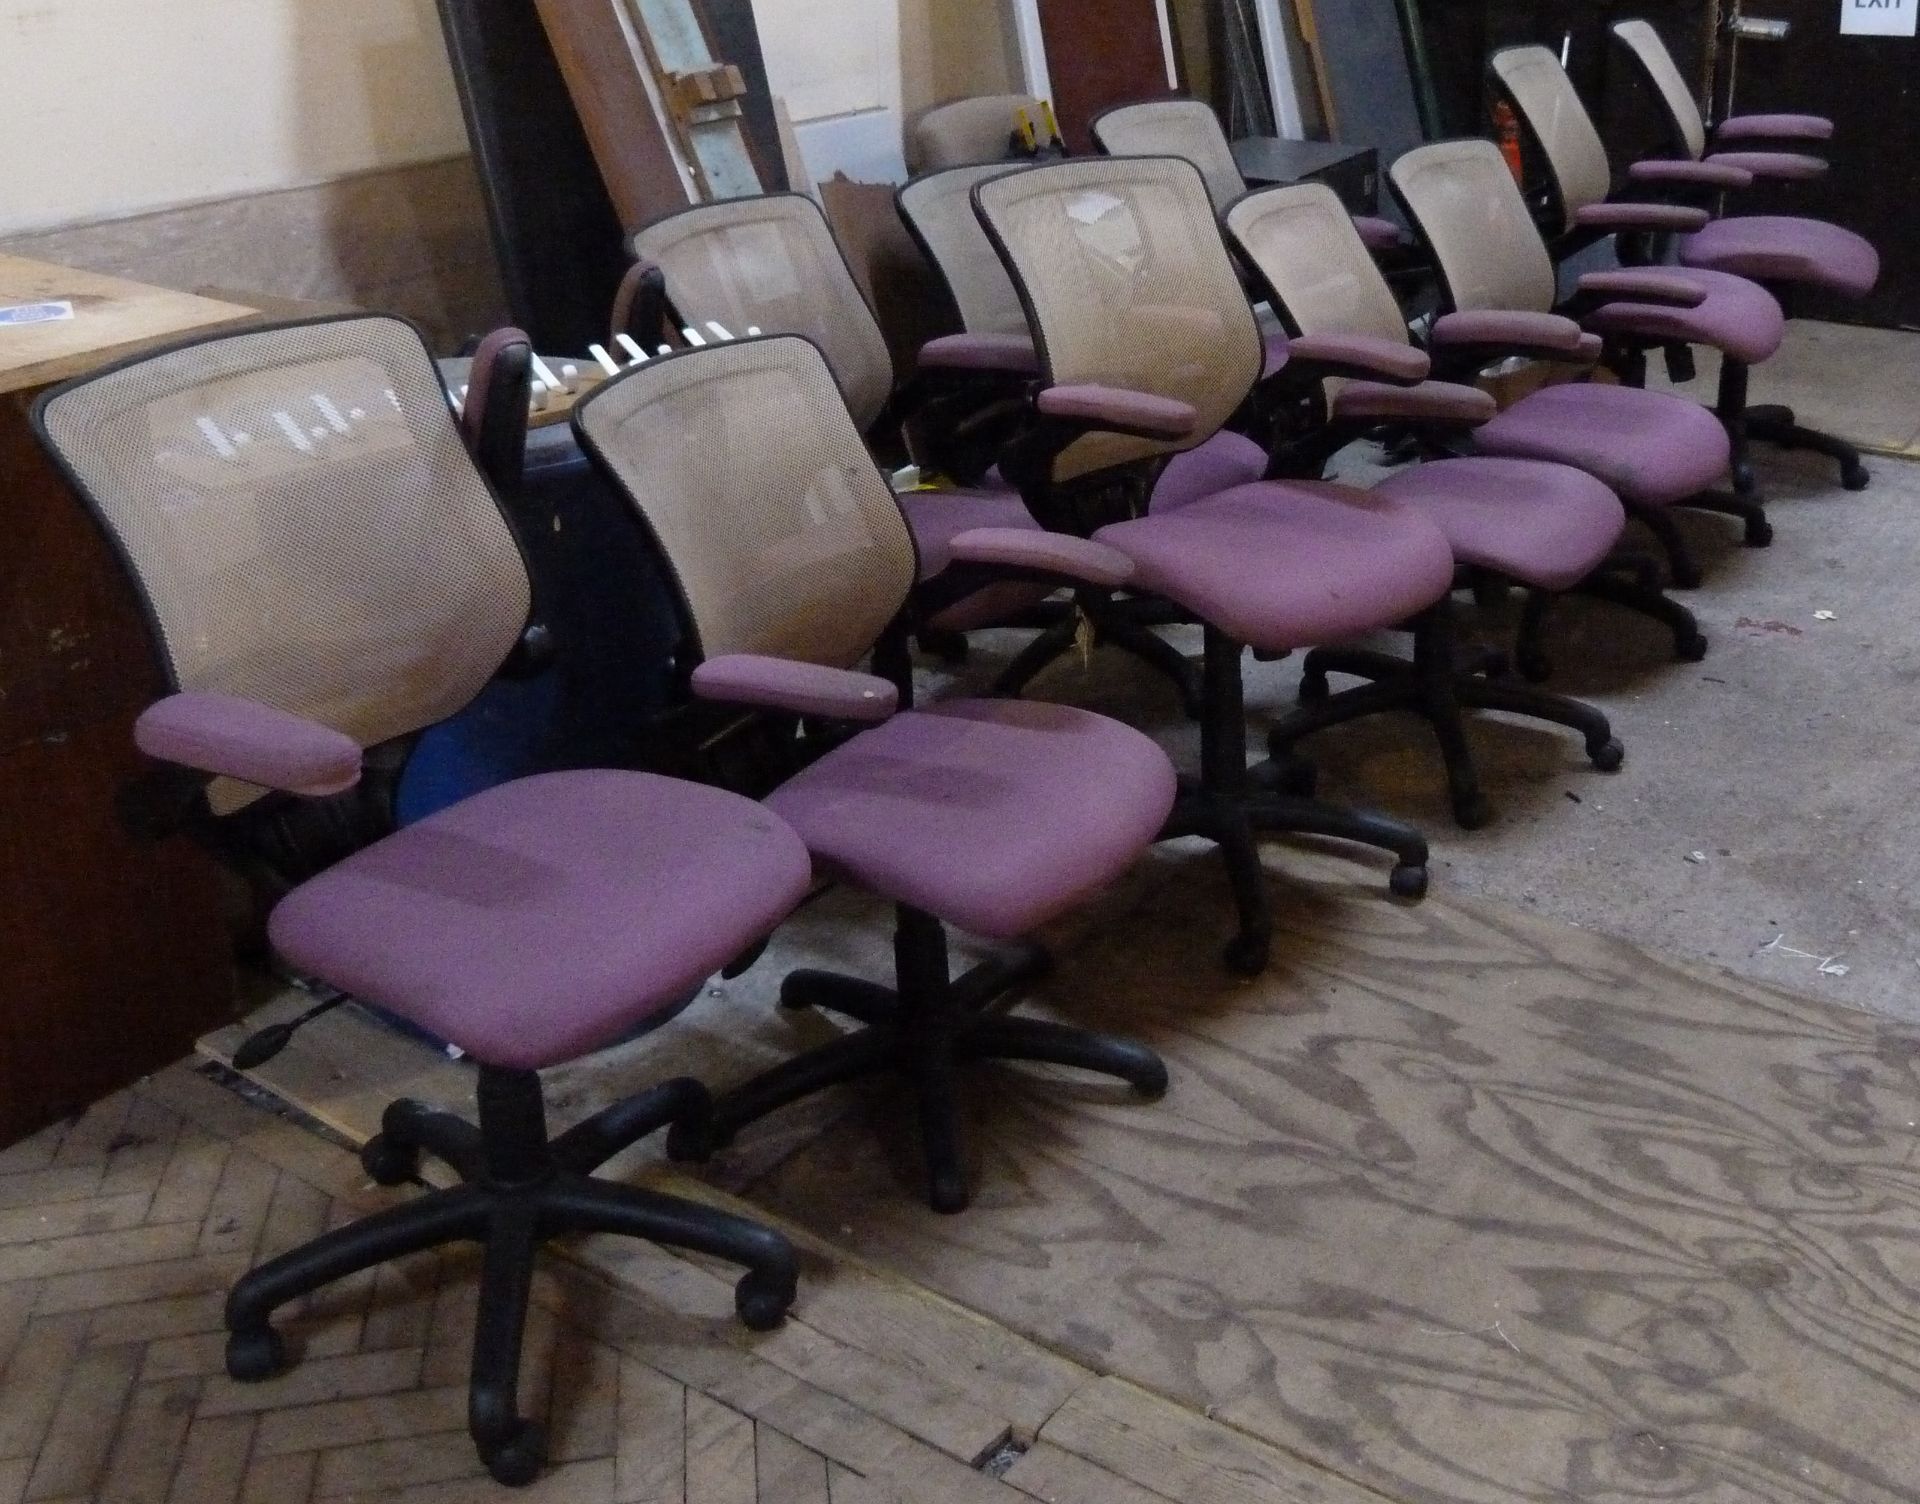 Ten operators chairs